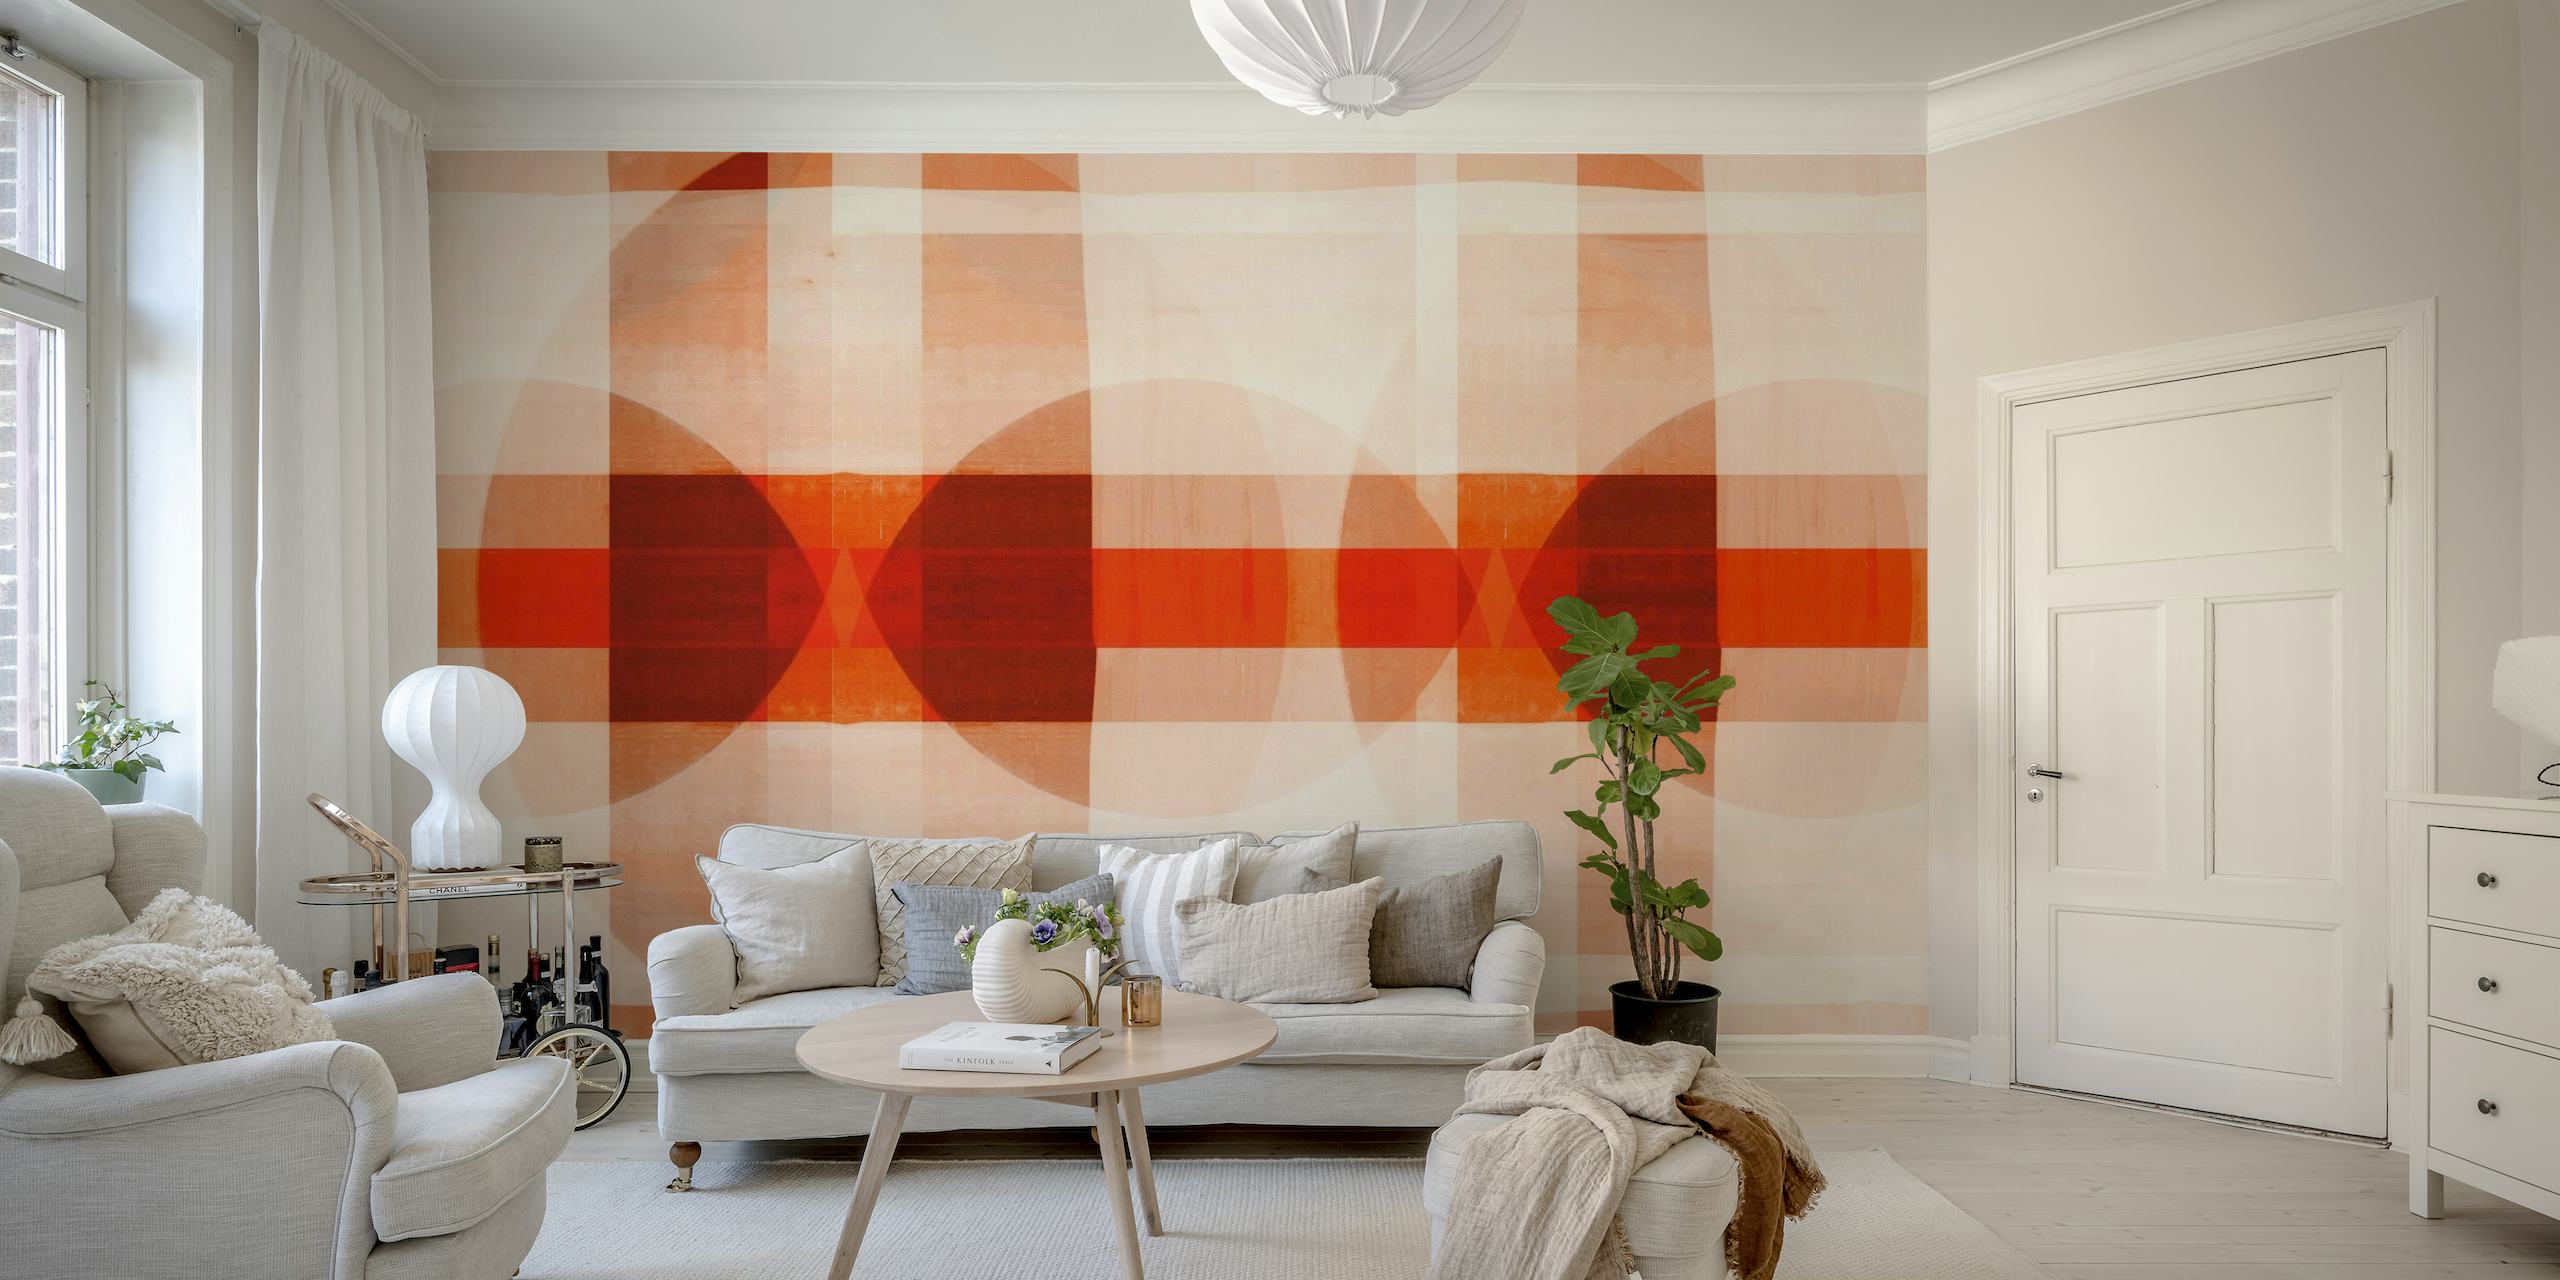 Bauhausin inspiroima mosaiikkiseinämaalaus, jossa geometrisia kuvioita lämpimissä väreissä